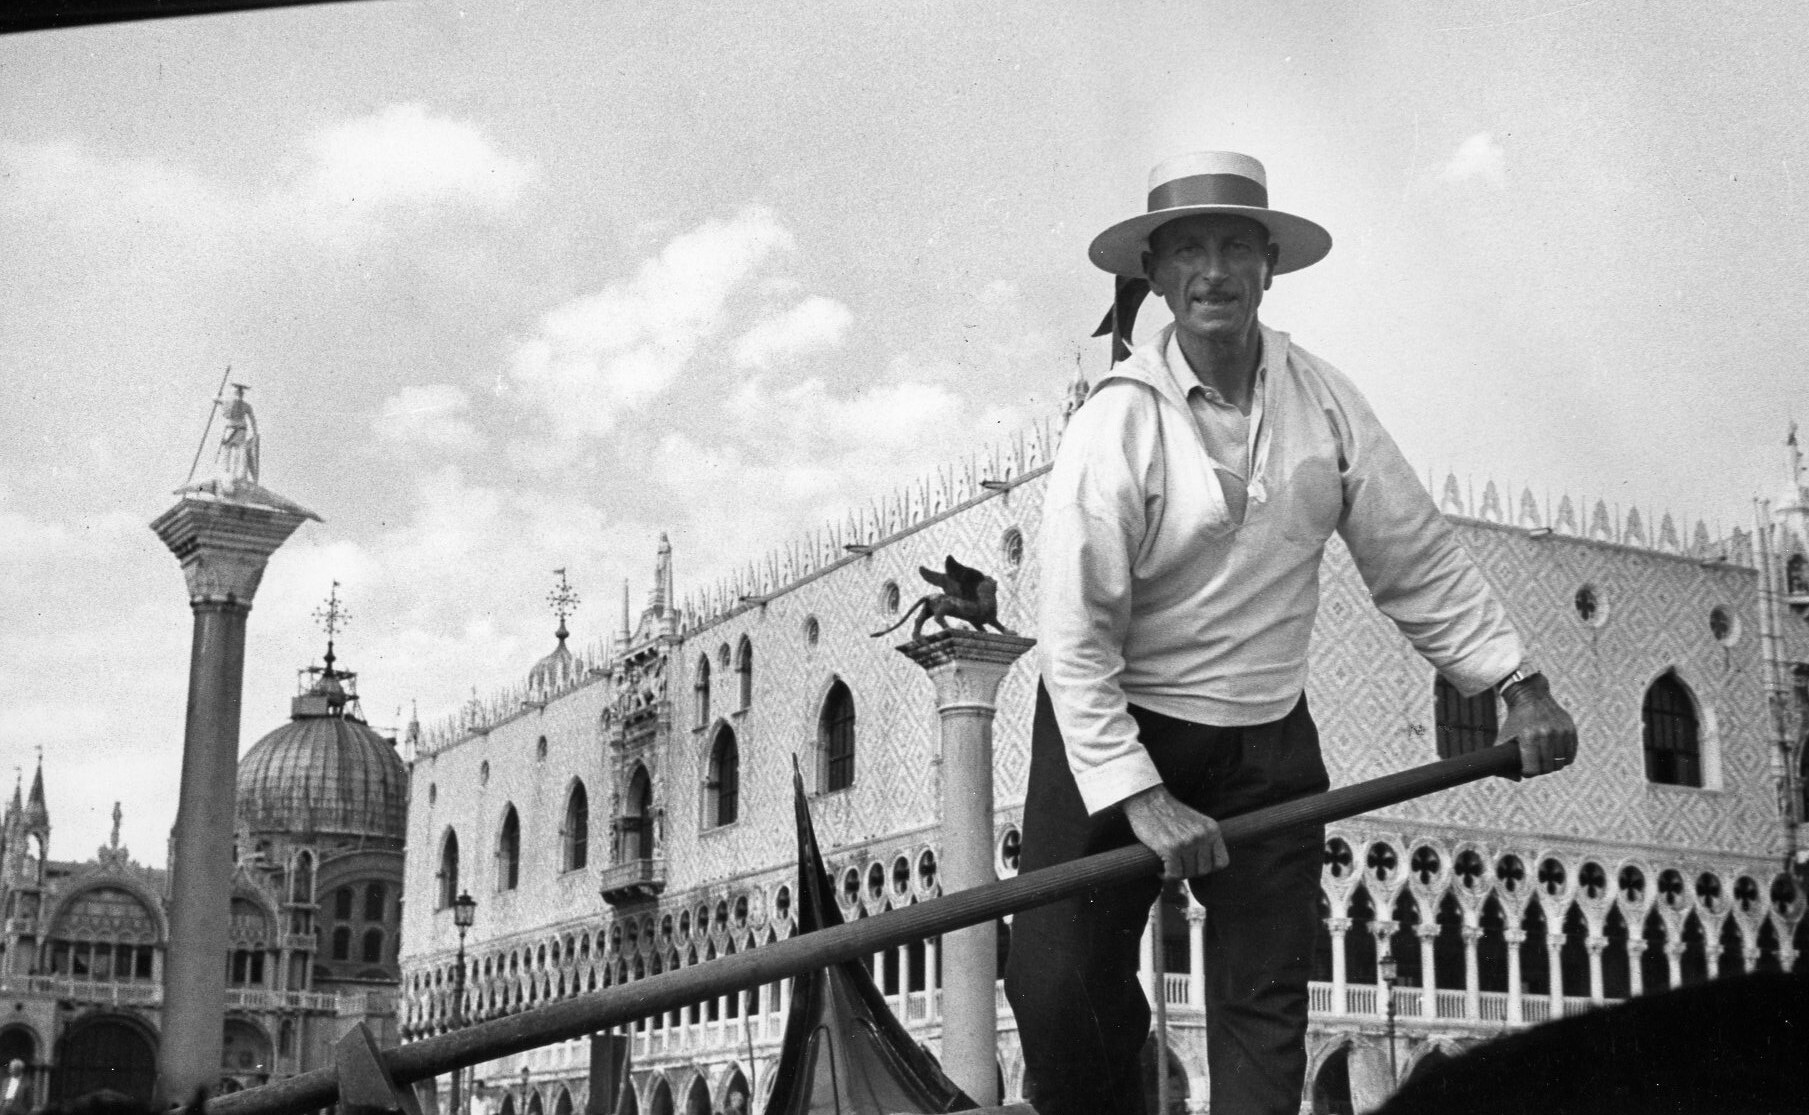 Гондольер перед церковью Сан-Марко, Венеция, Италия, 1951 год. Фотограф Рут Оркин